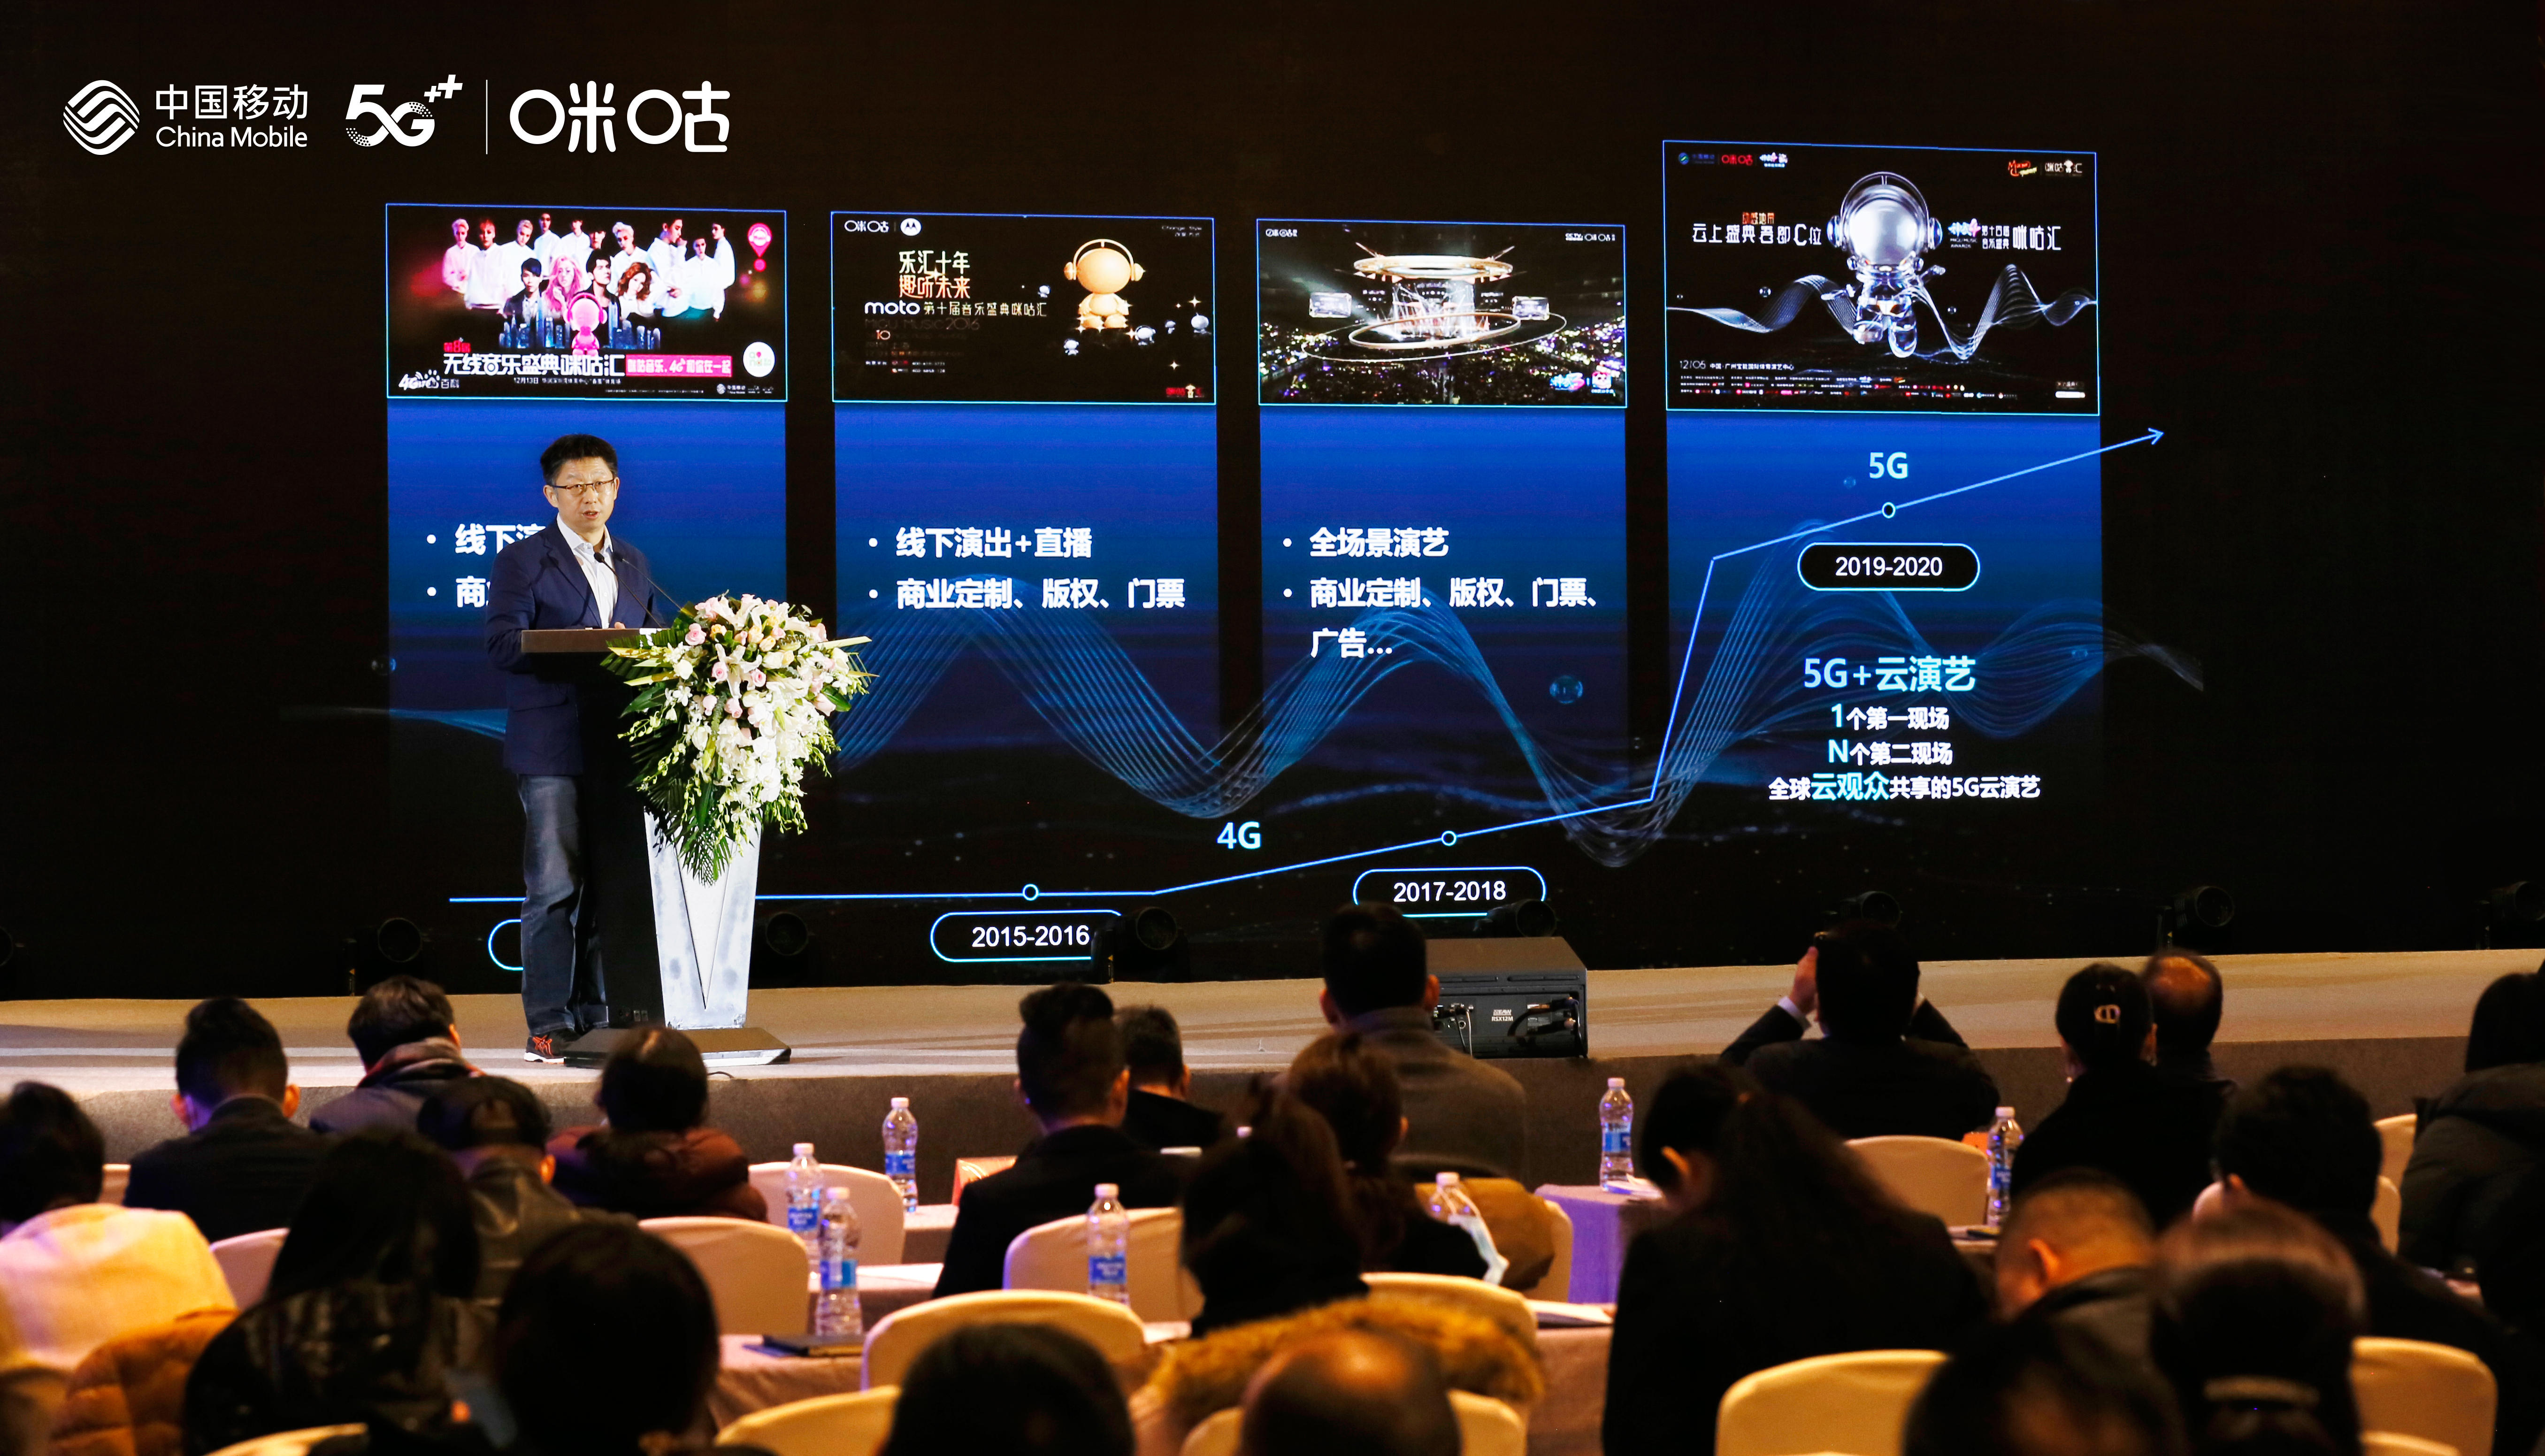 演艺新业态发展委员会成立大会举行 中国移动5G+云演艺助力数字产业发展